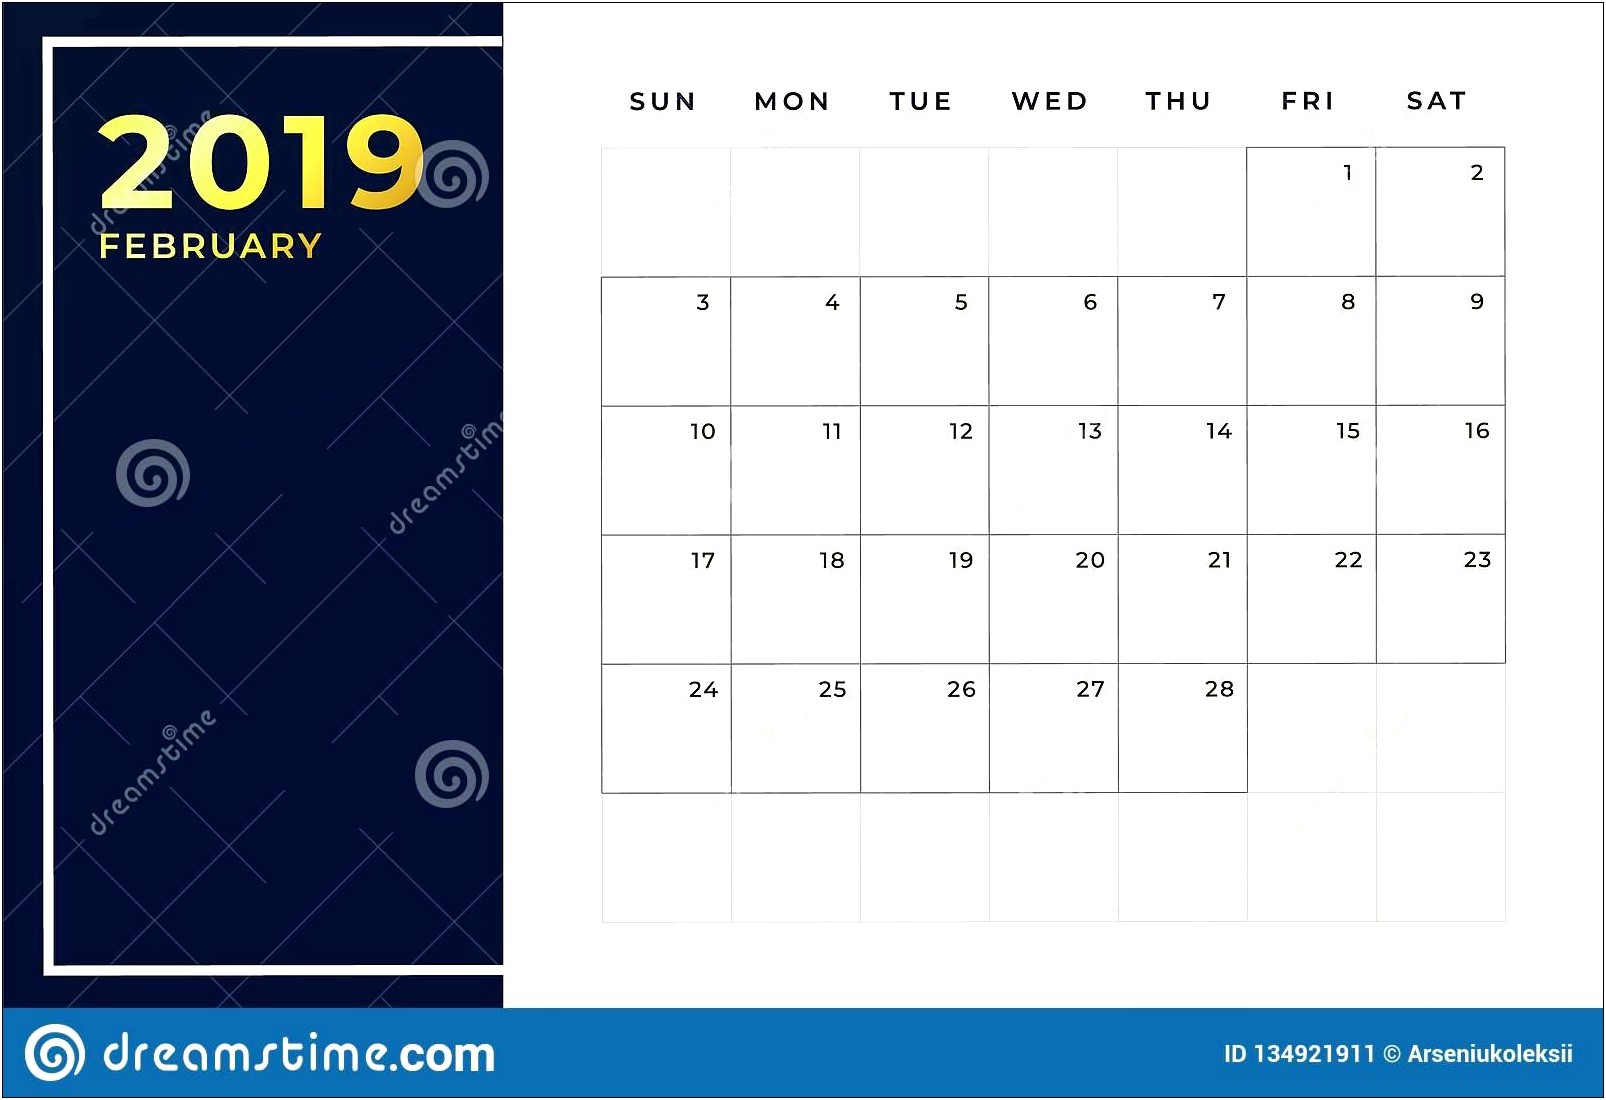 Copyright Free Calendar Templates February 2019